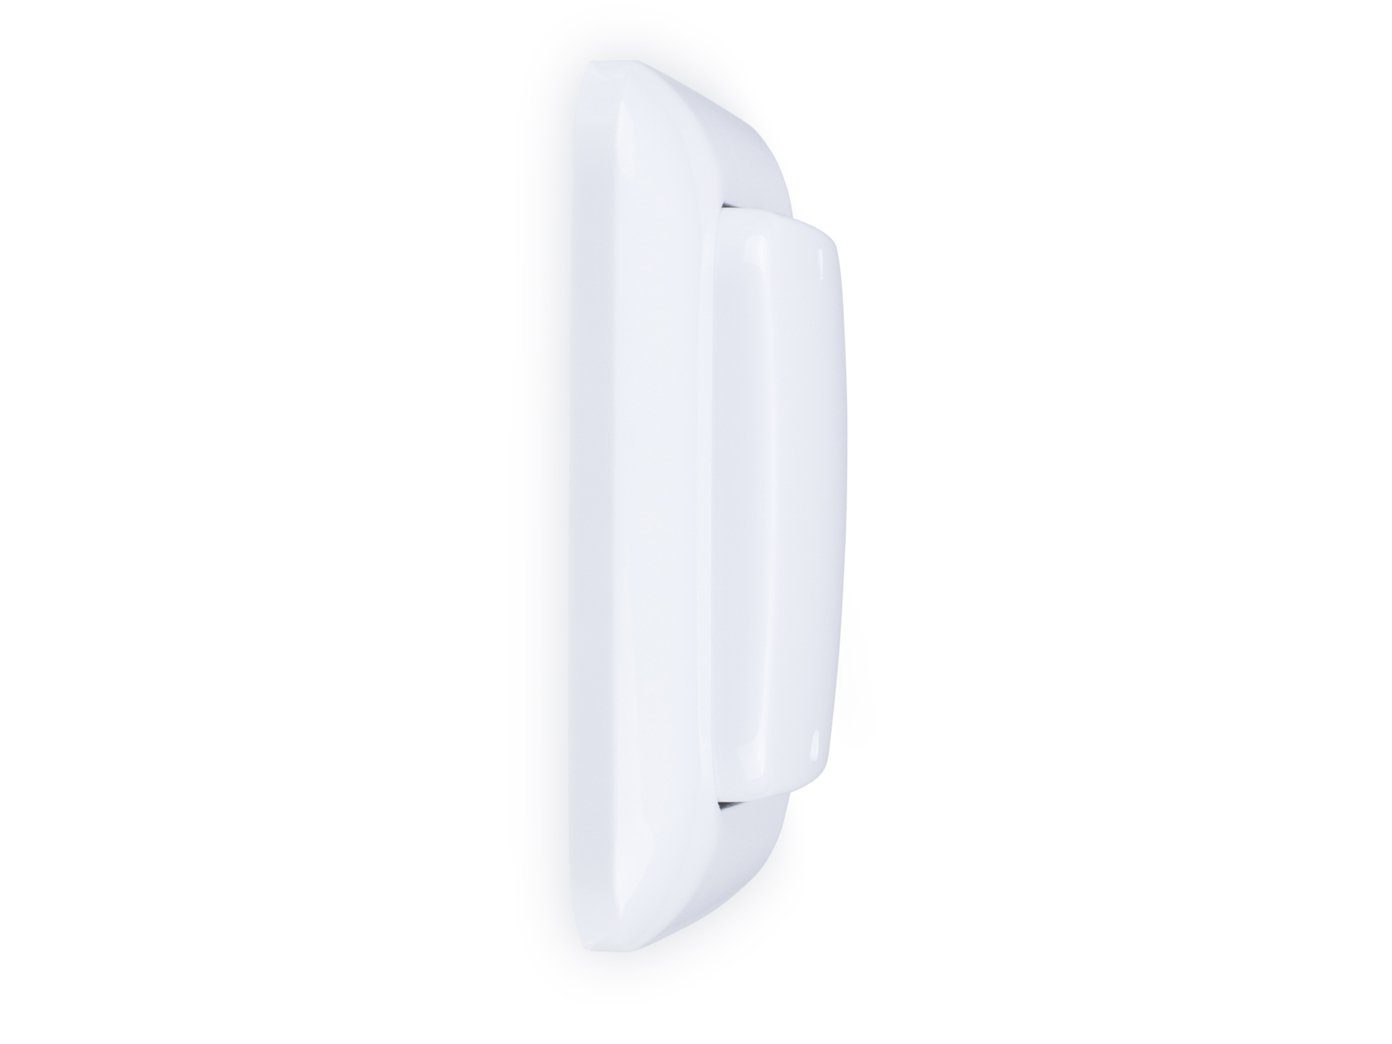 smartwares Licht-Funksteuerung, Smart Home Taster Funk + Einbauschalter Schalter Set Wandschalter 4x